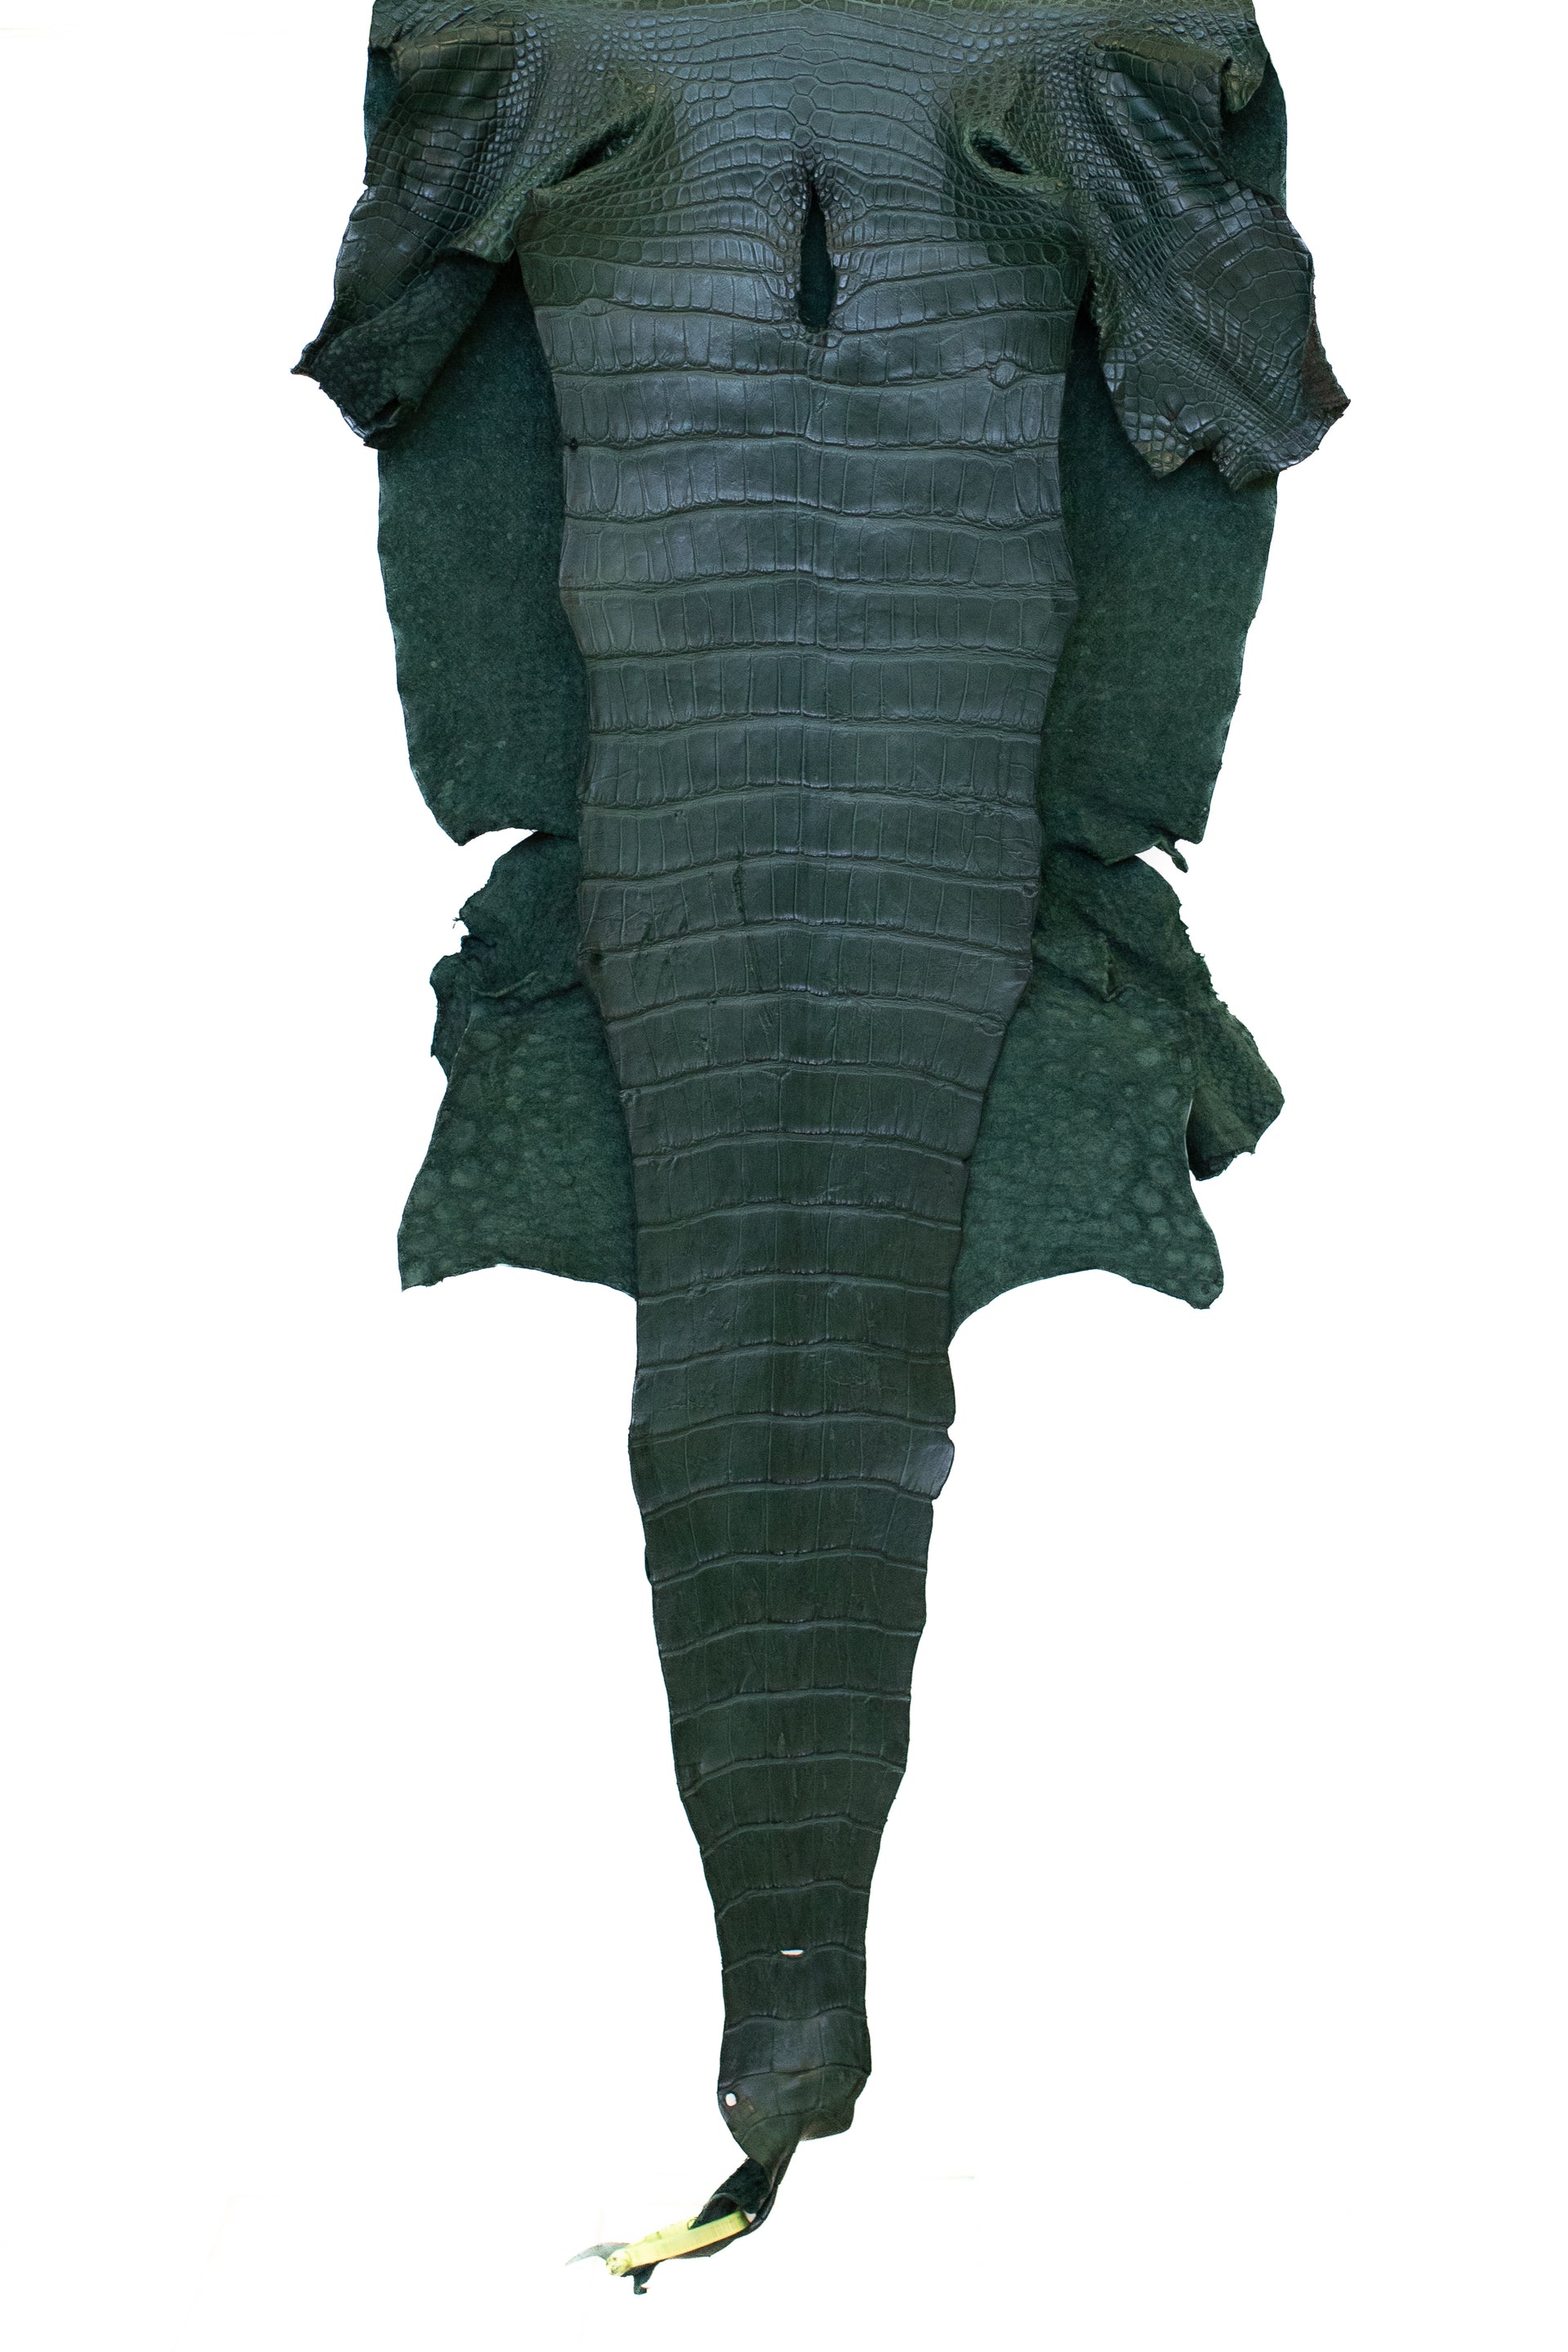 46 cm Grade 3/4 Forest Green Matte Wild American Alligator Leather - Tag: LA22-0021459